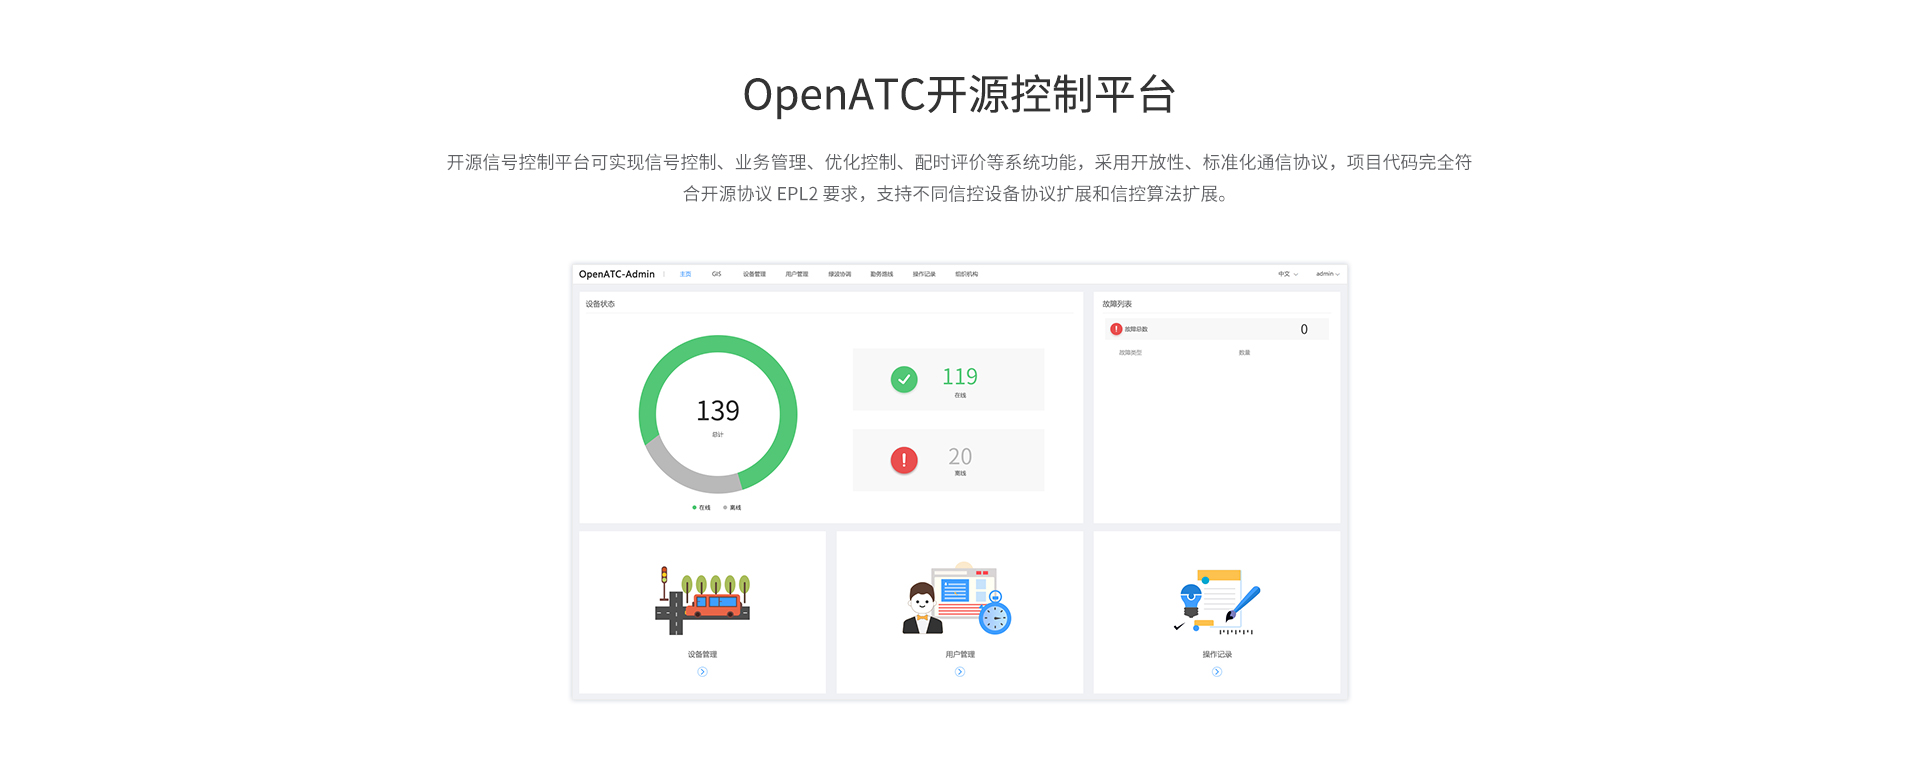 OpenATC开源控制平台